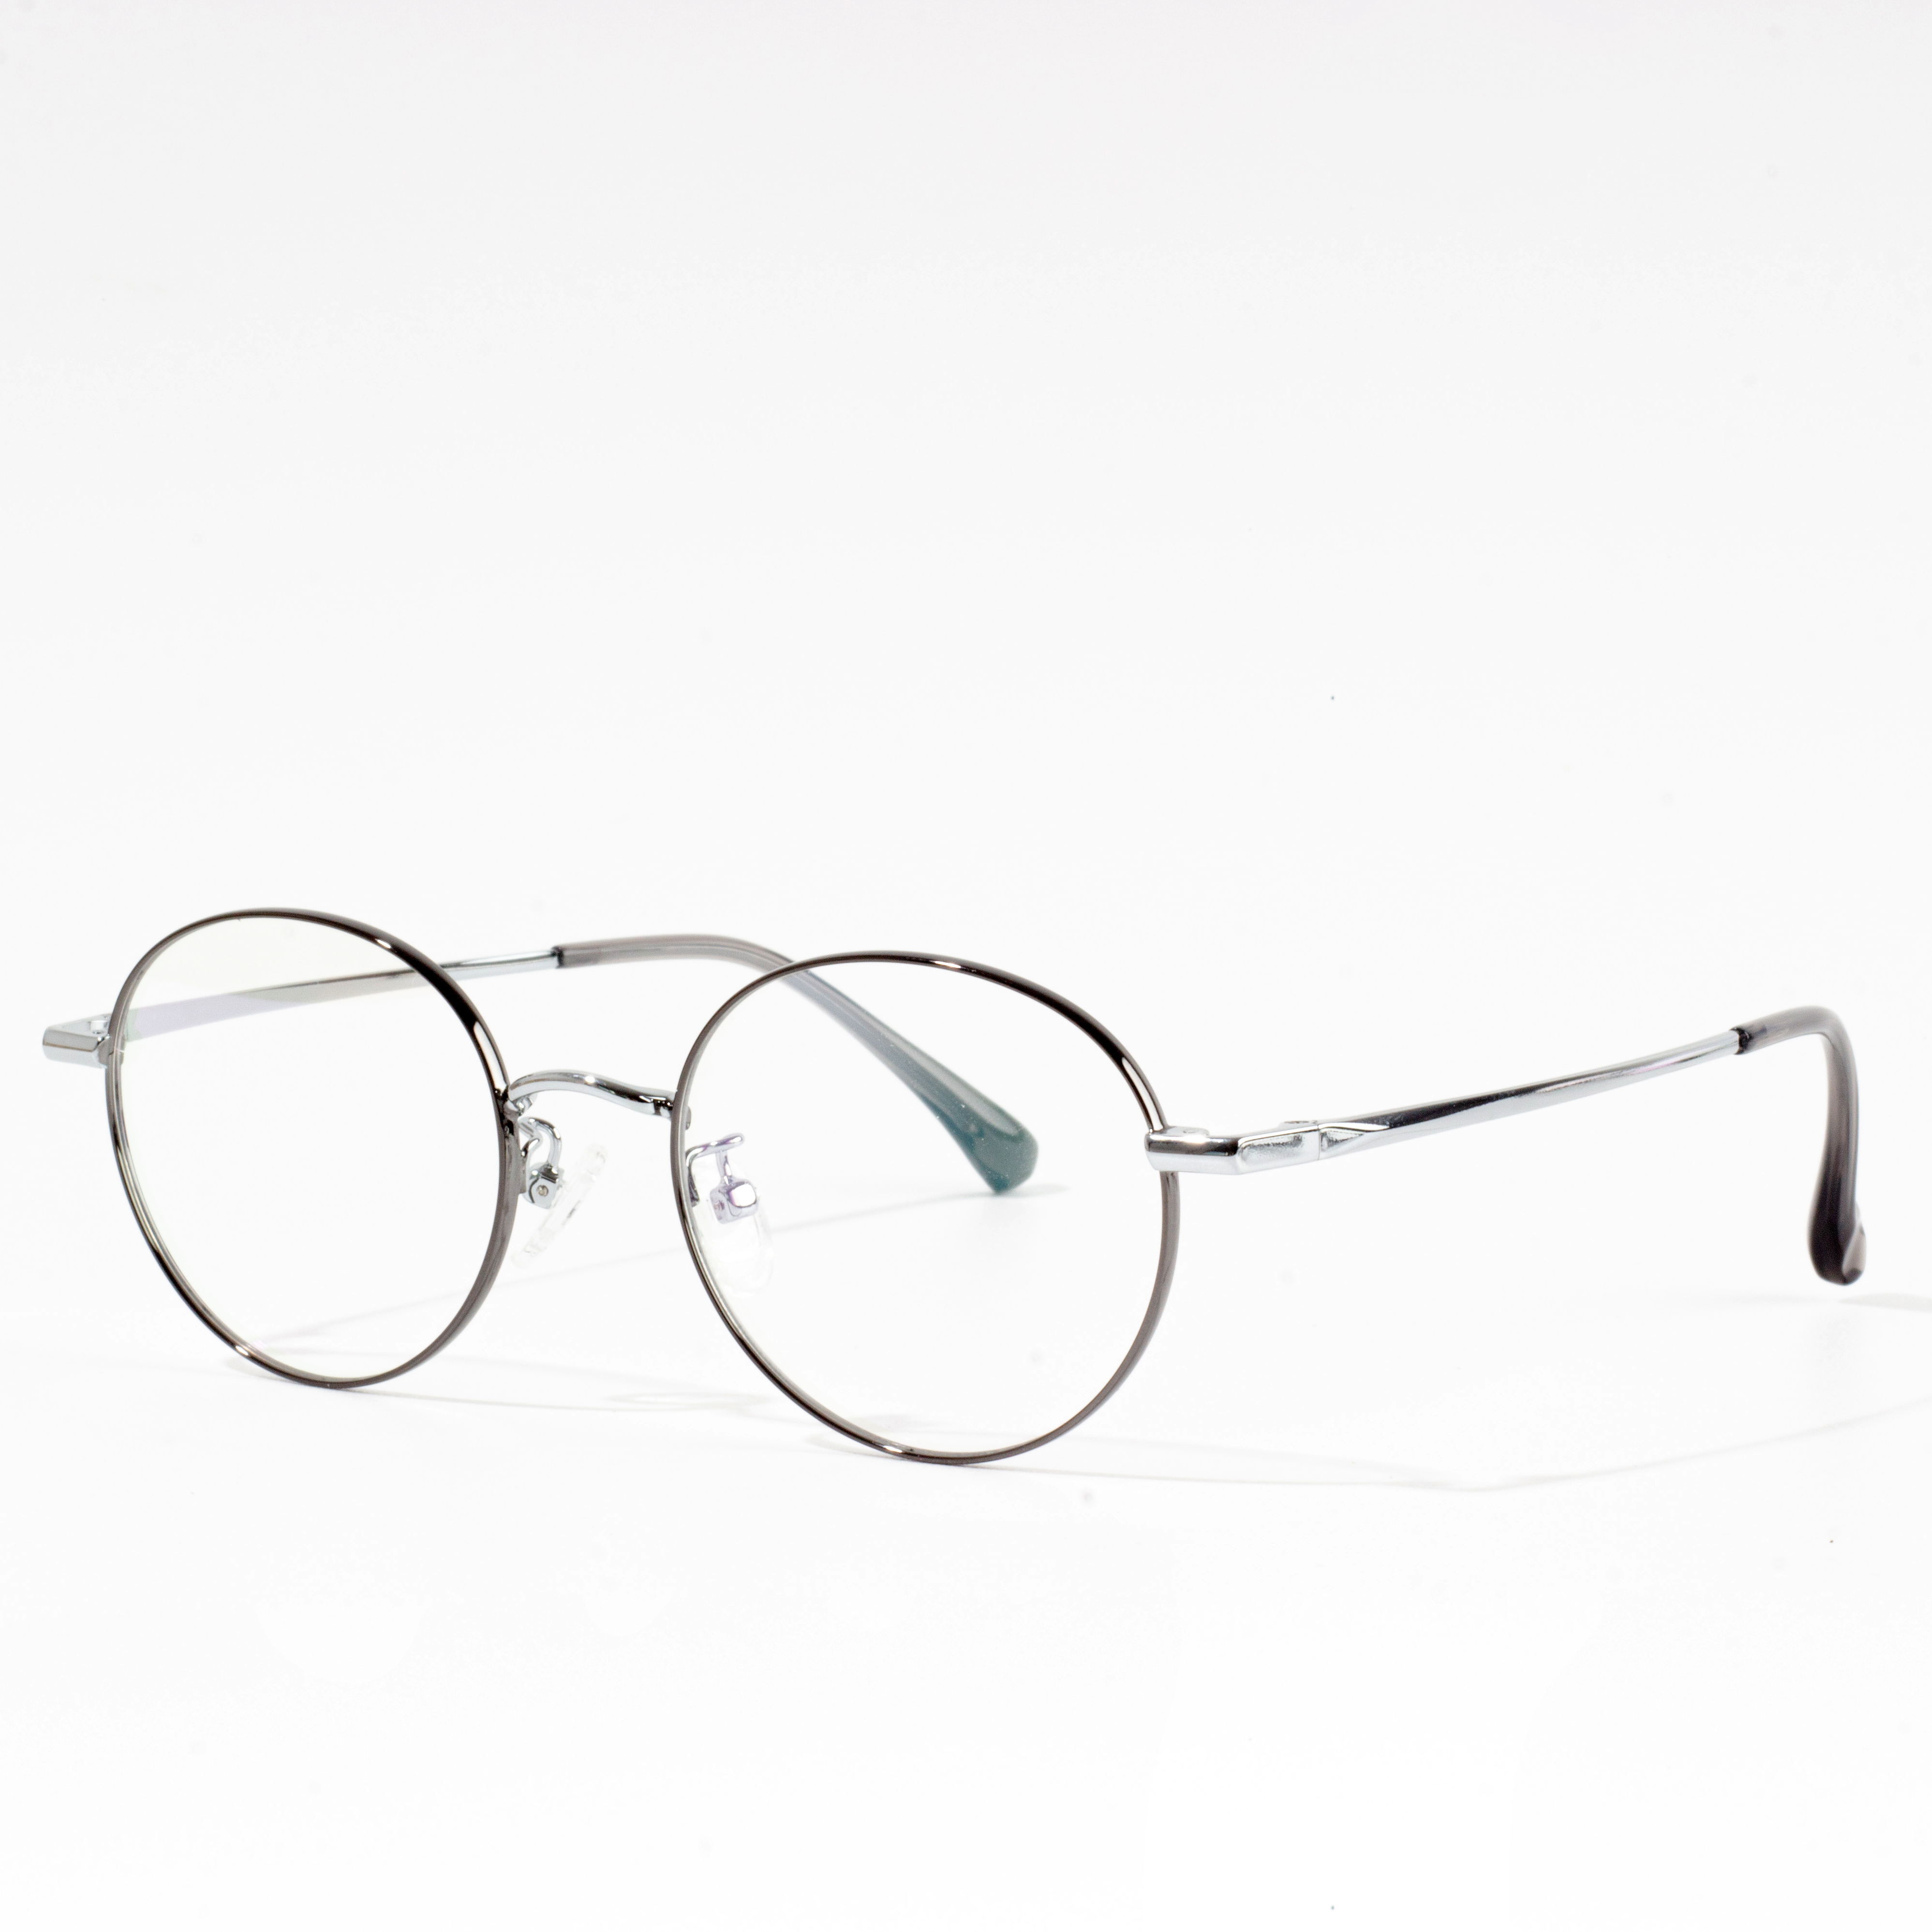 montature metalliche per occhiali